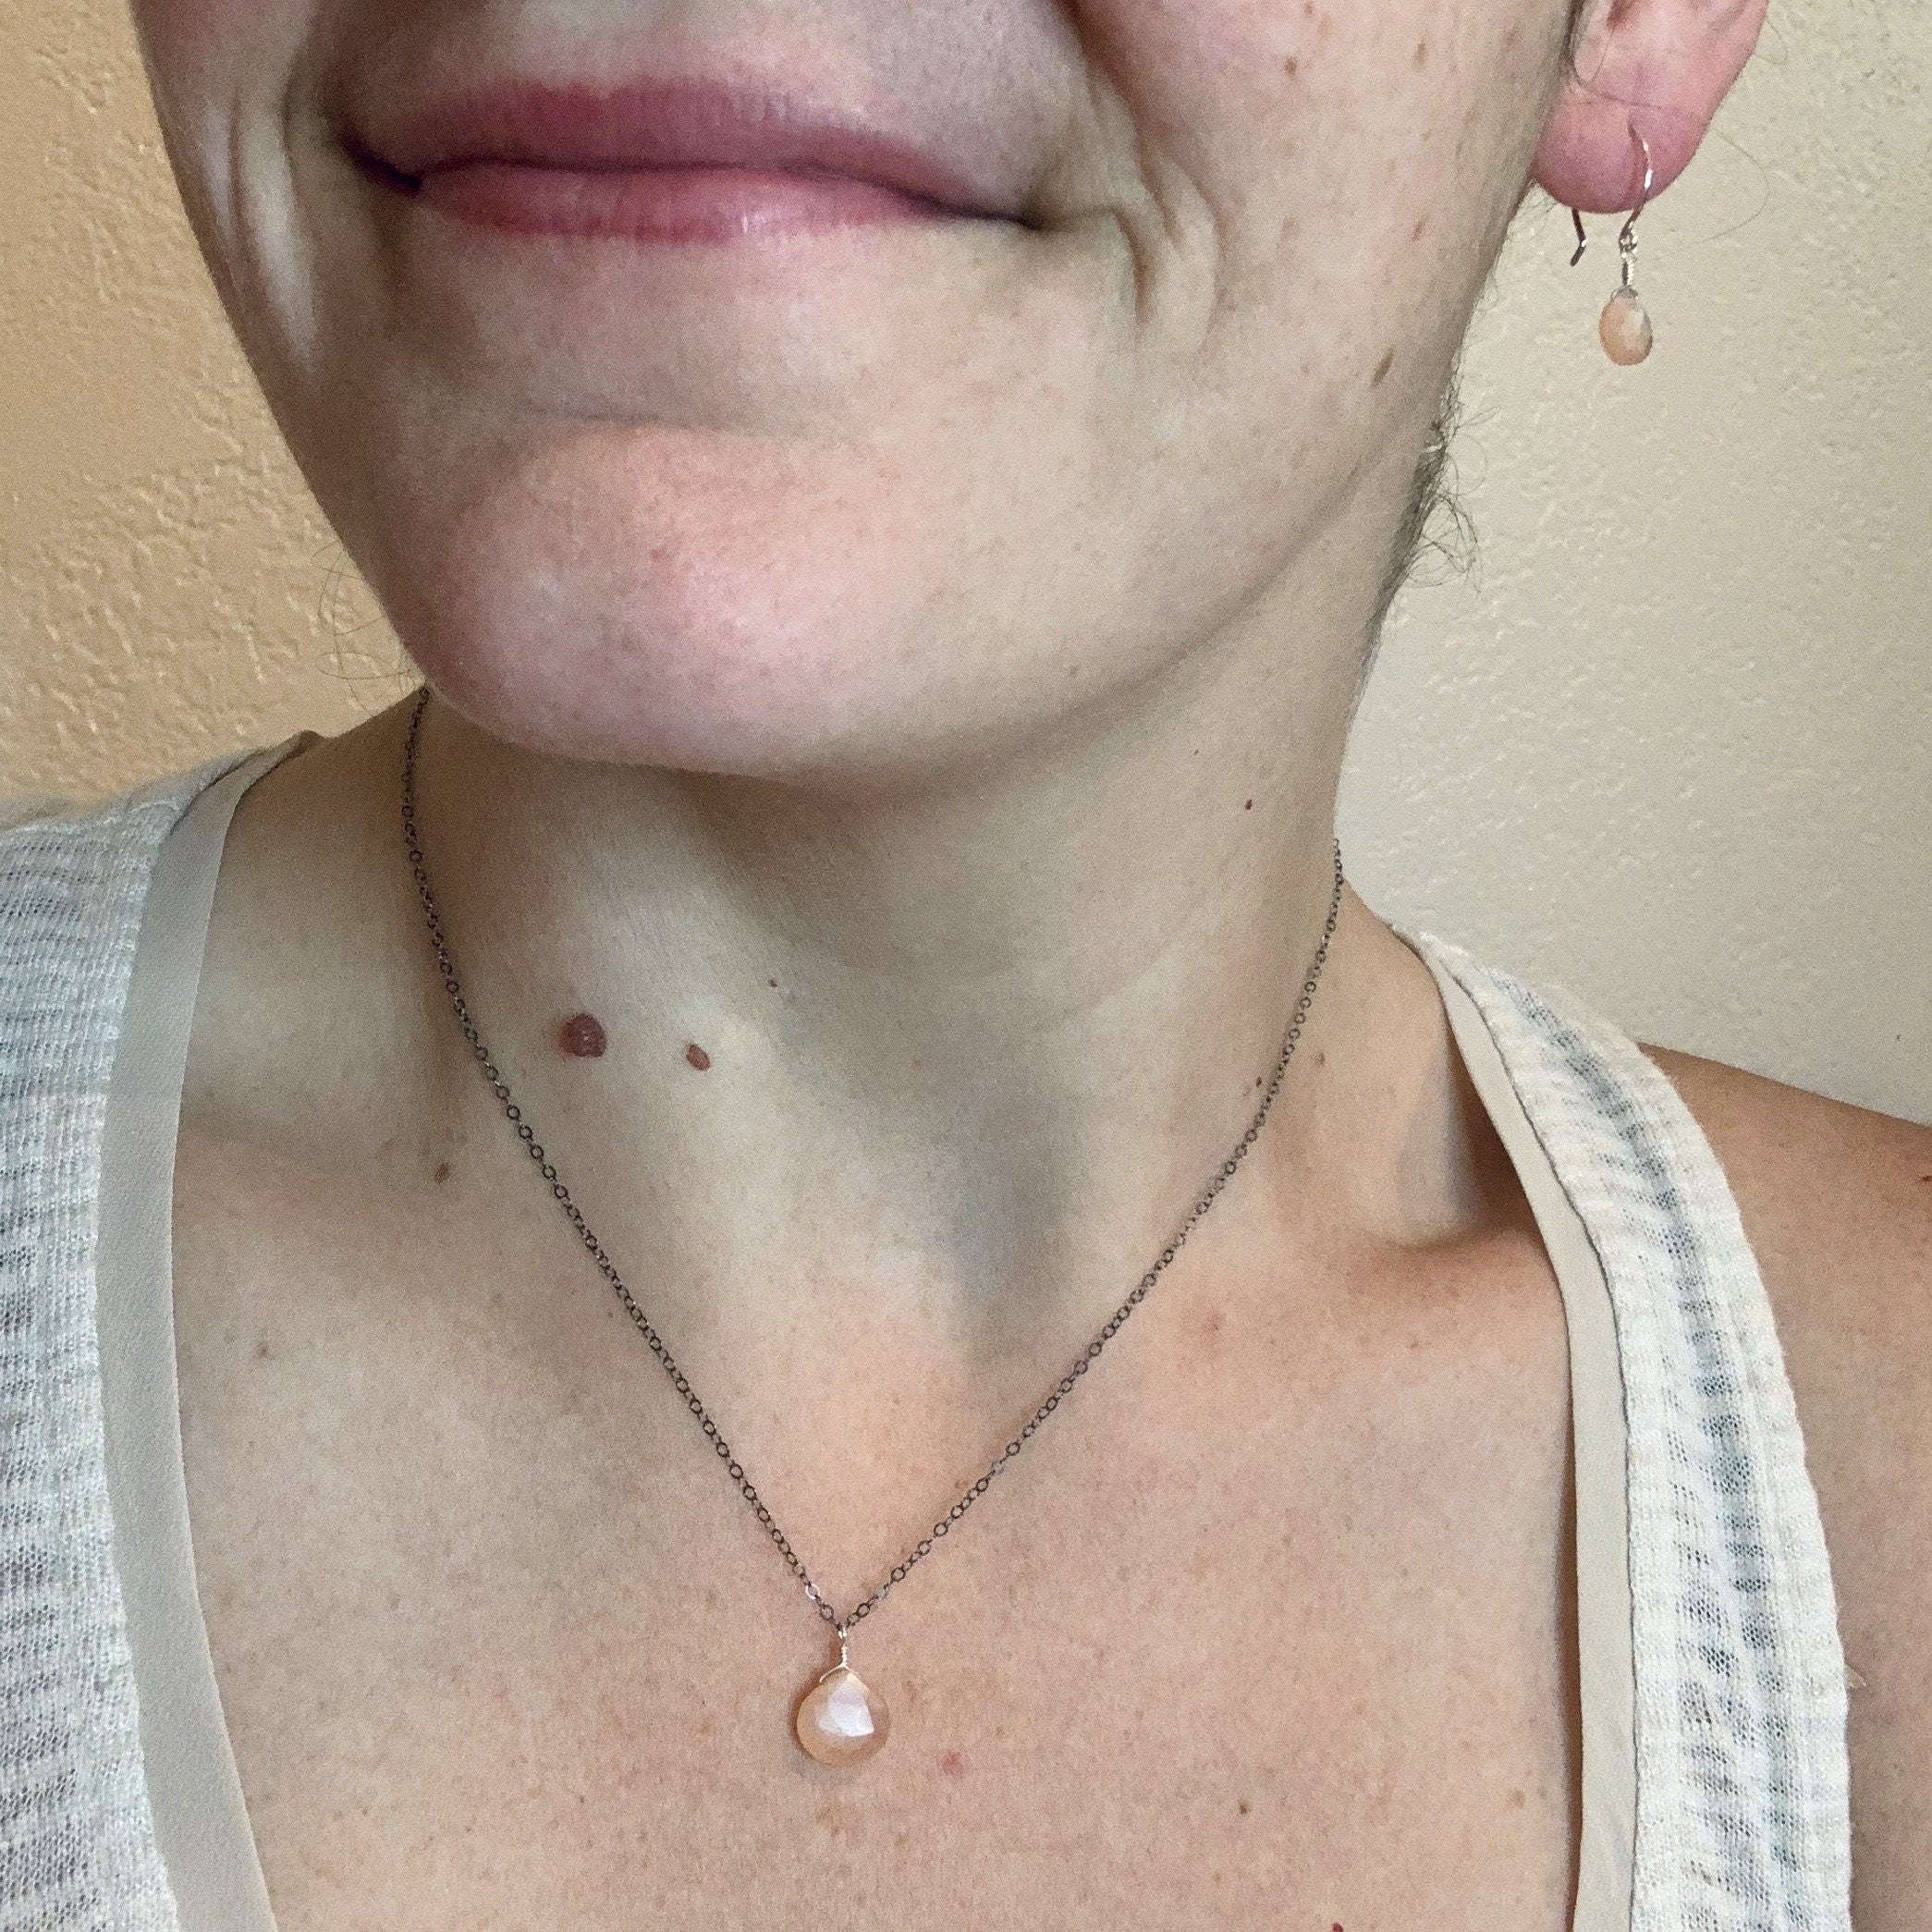 Dusk Earrings - peach moonstone simple everyday gemstone drop earrings -  Ugly Baby